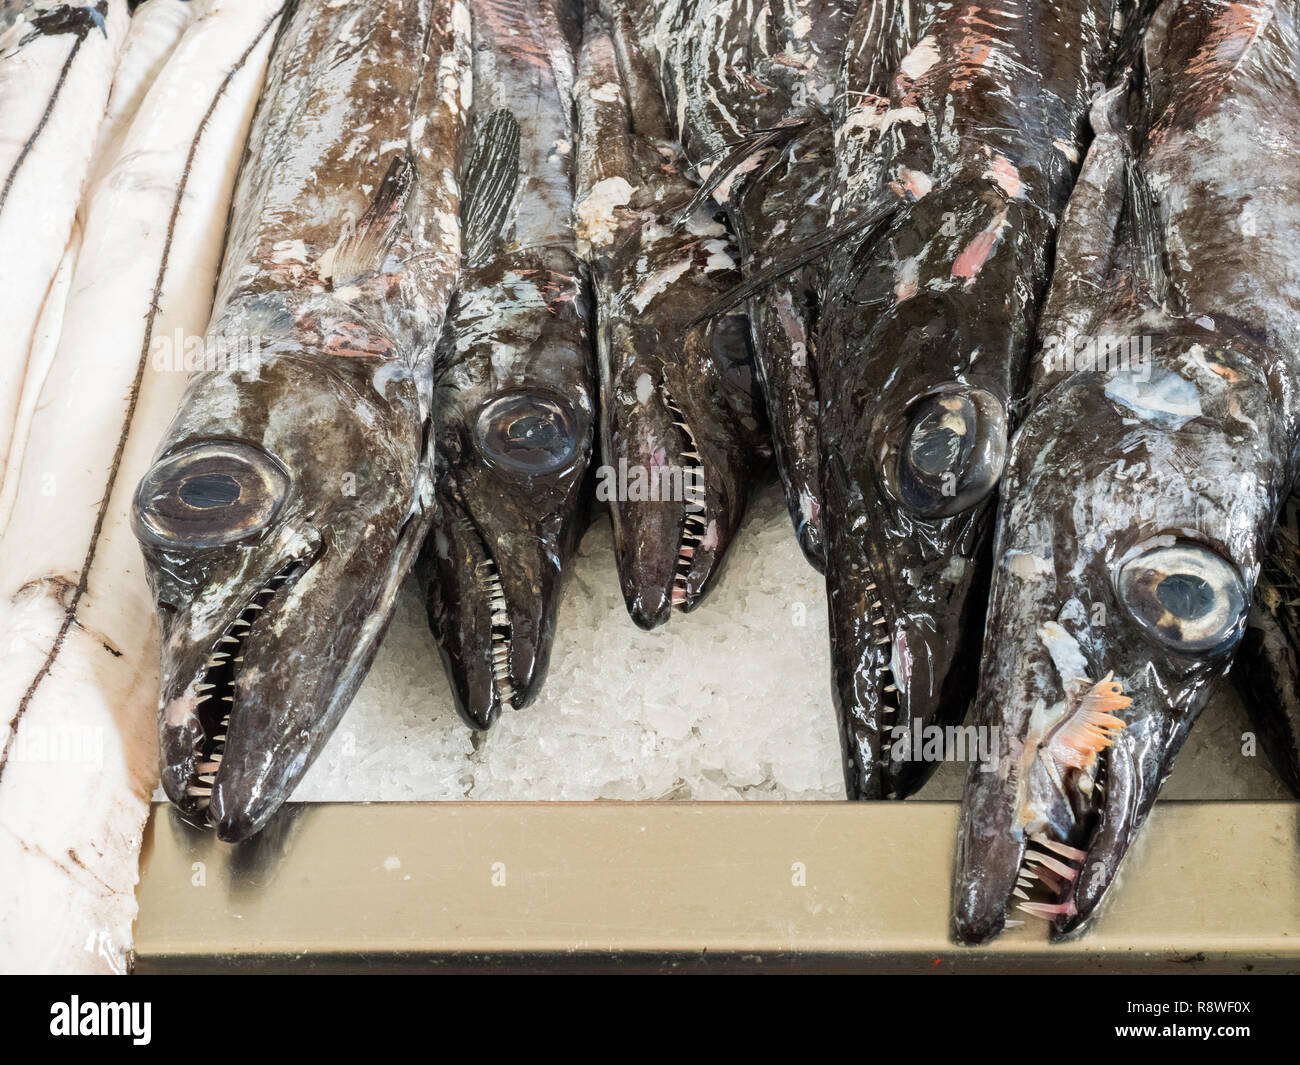 Scabardfish noir (Aphanopus carbo) sur la glace au marché de Funchal, Madère Banque D'Images